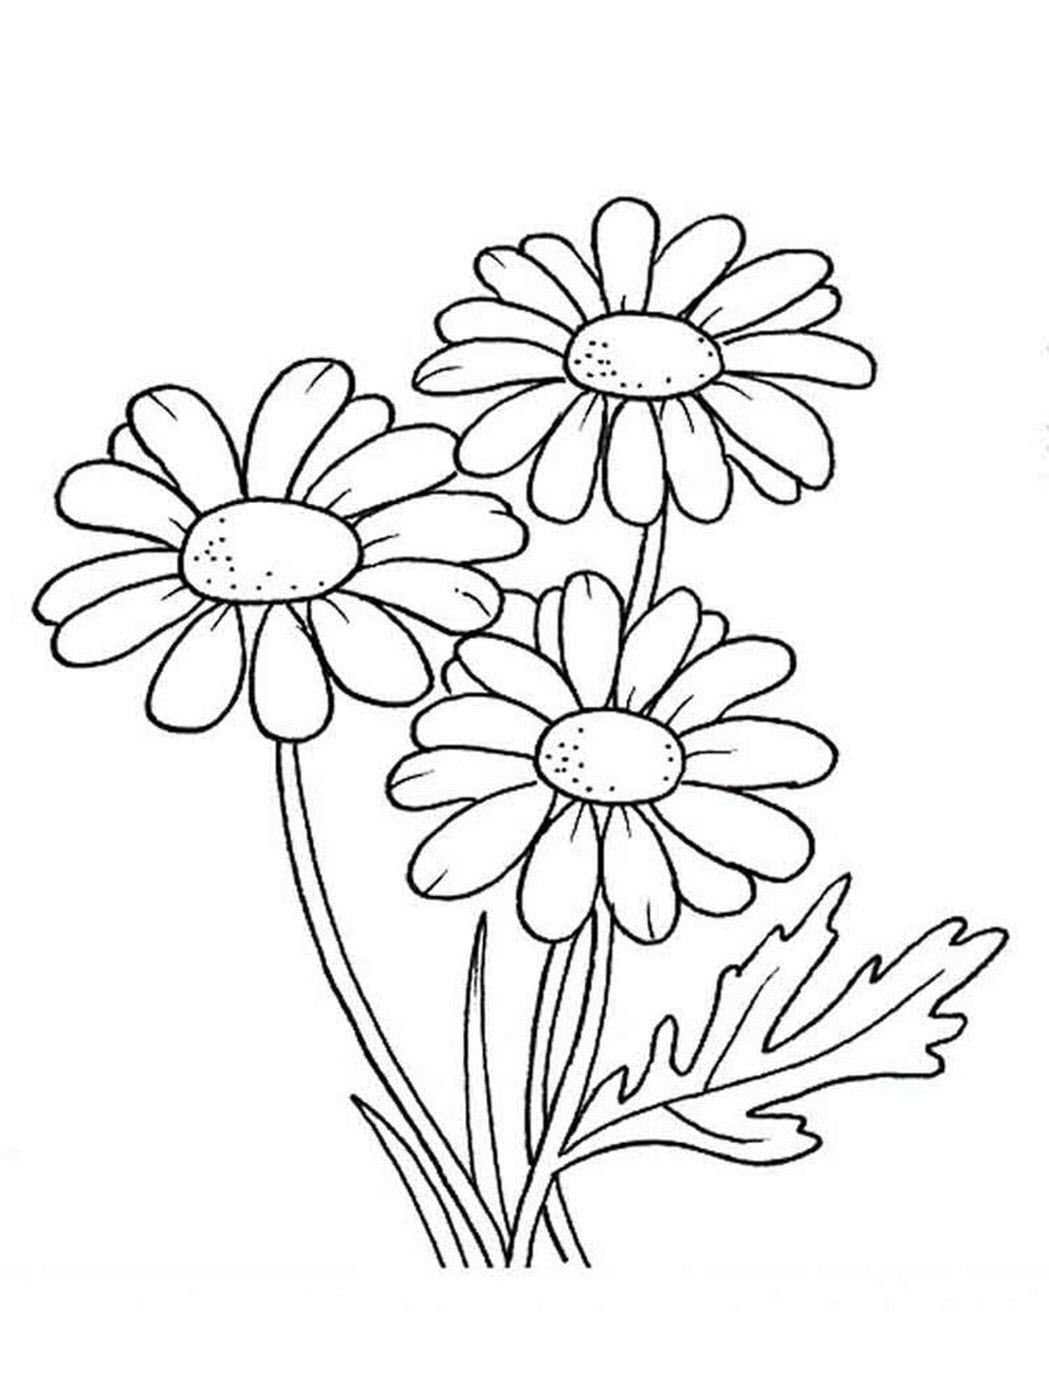 200 Cách Vẽ Bông Hoa Đẹp Đơn Giản Dễ Học THỬ NGAY